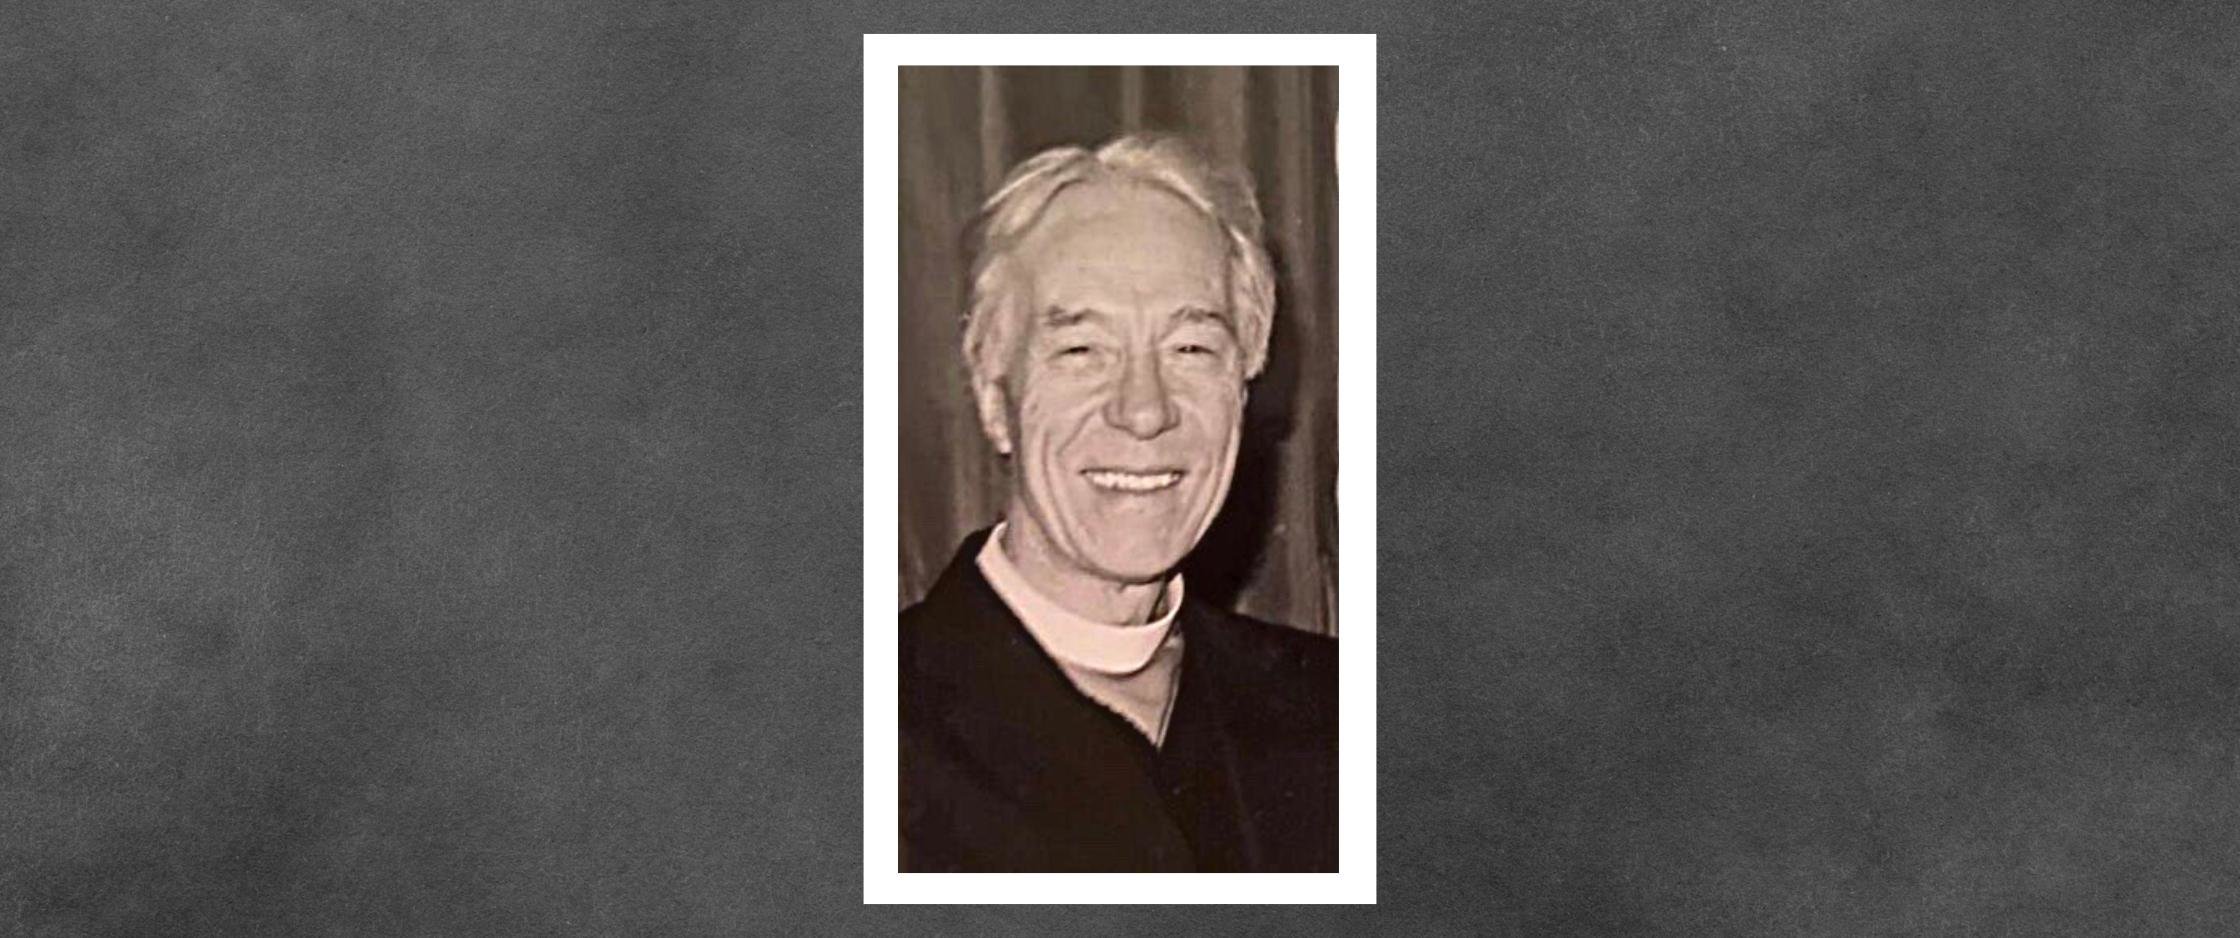 Dean Mervyn Wilson “loved and served the Good Shepherd”